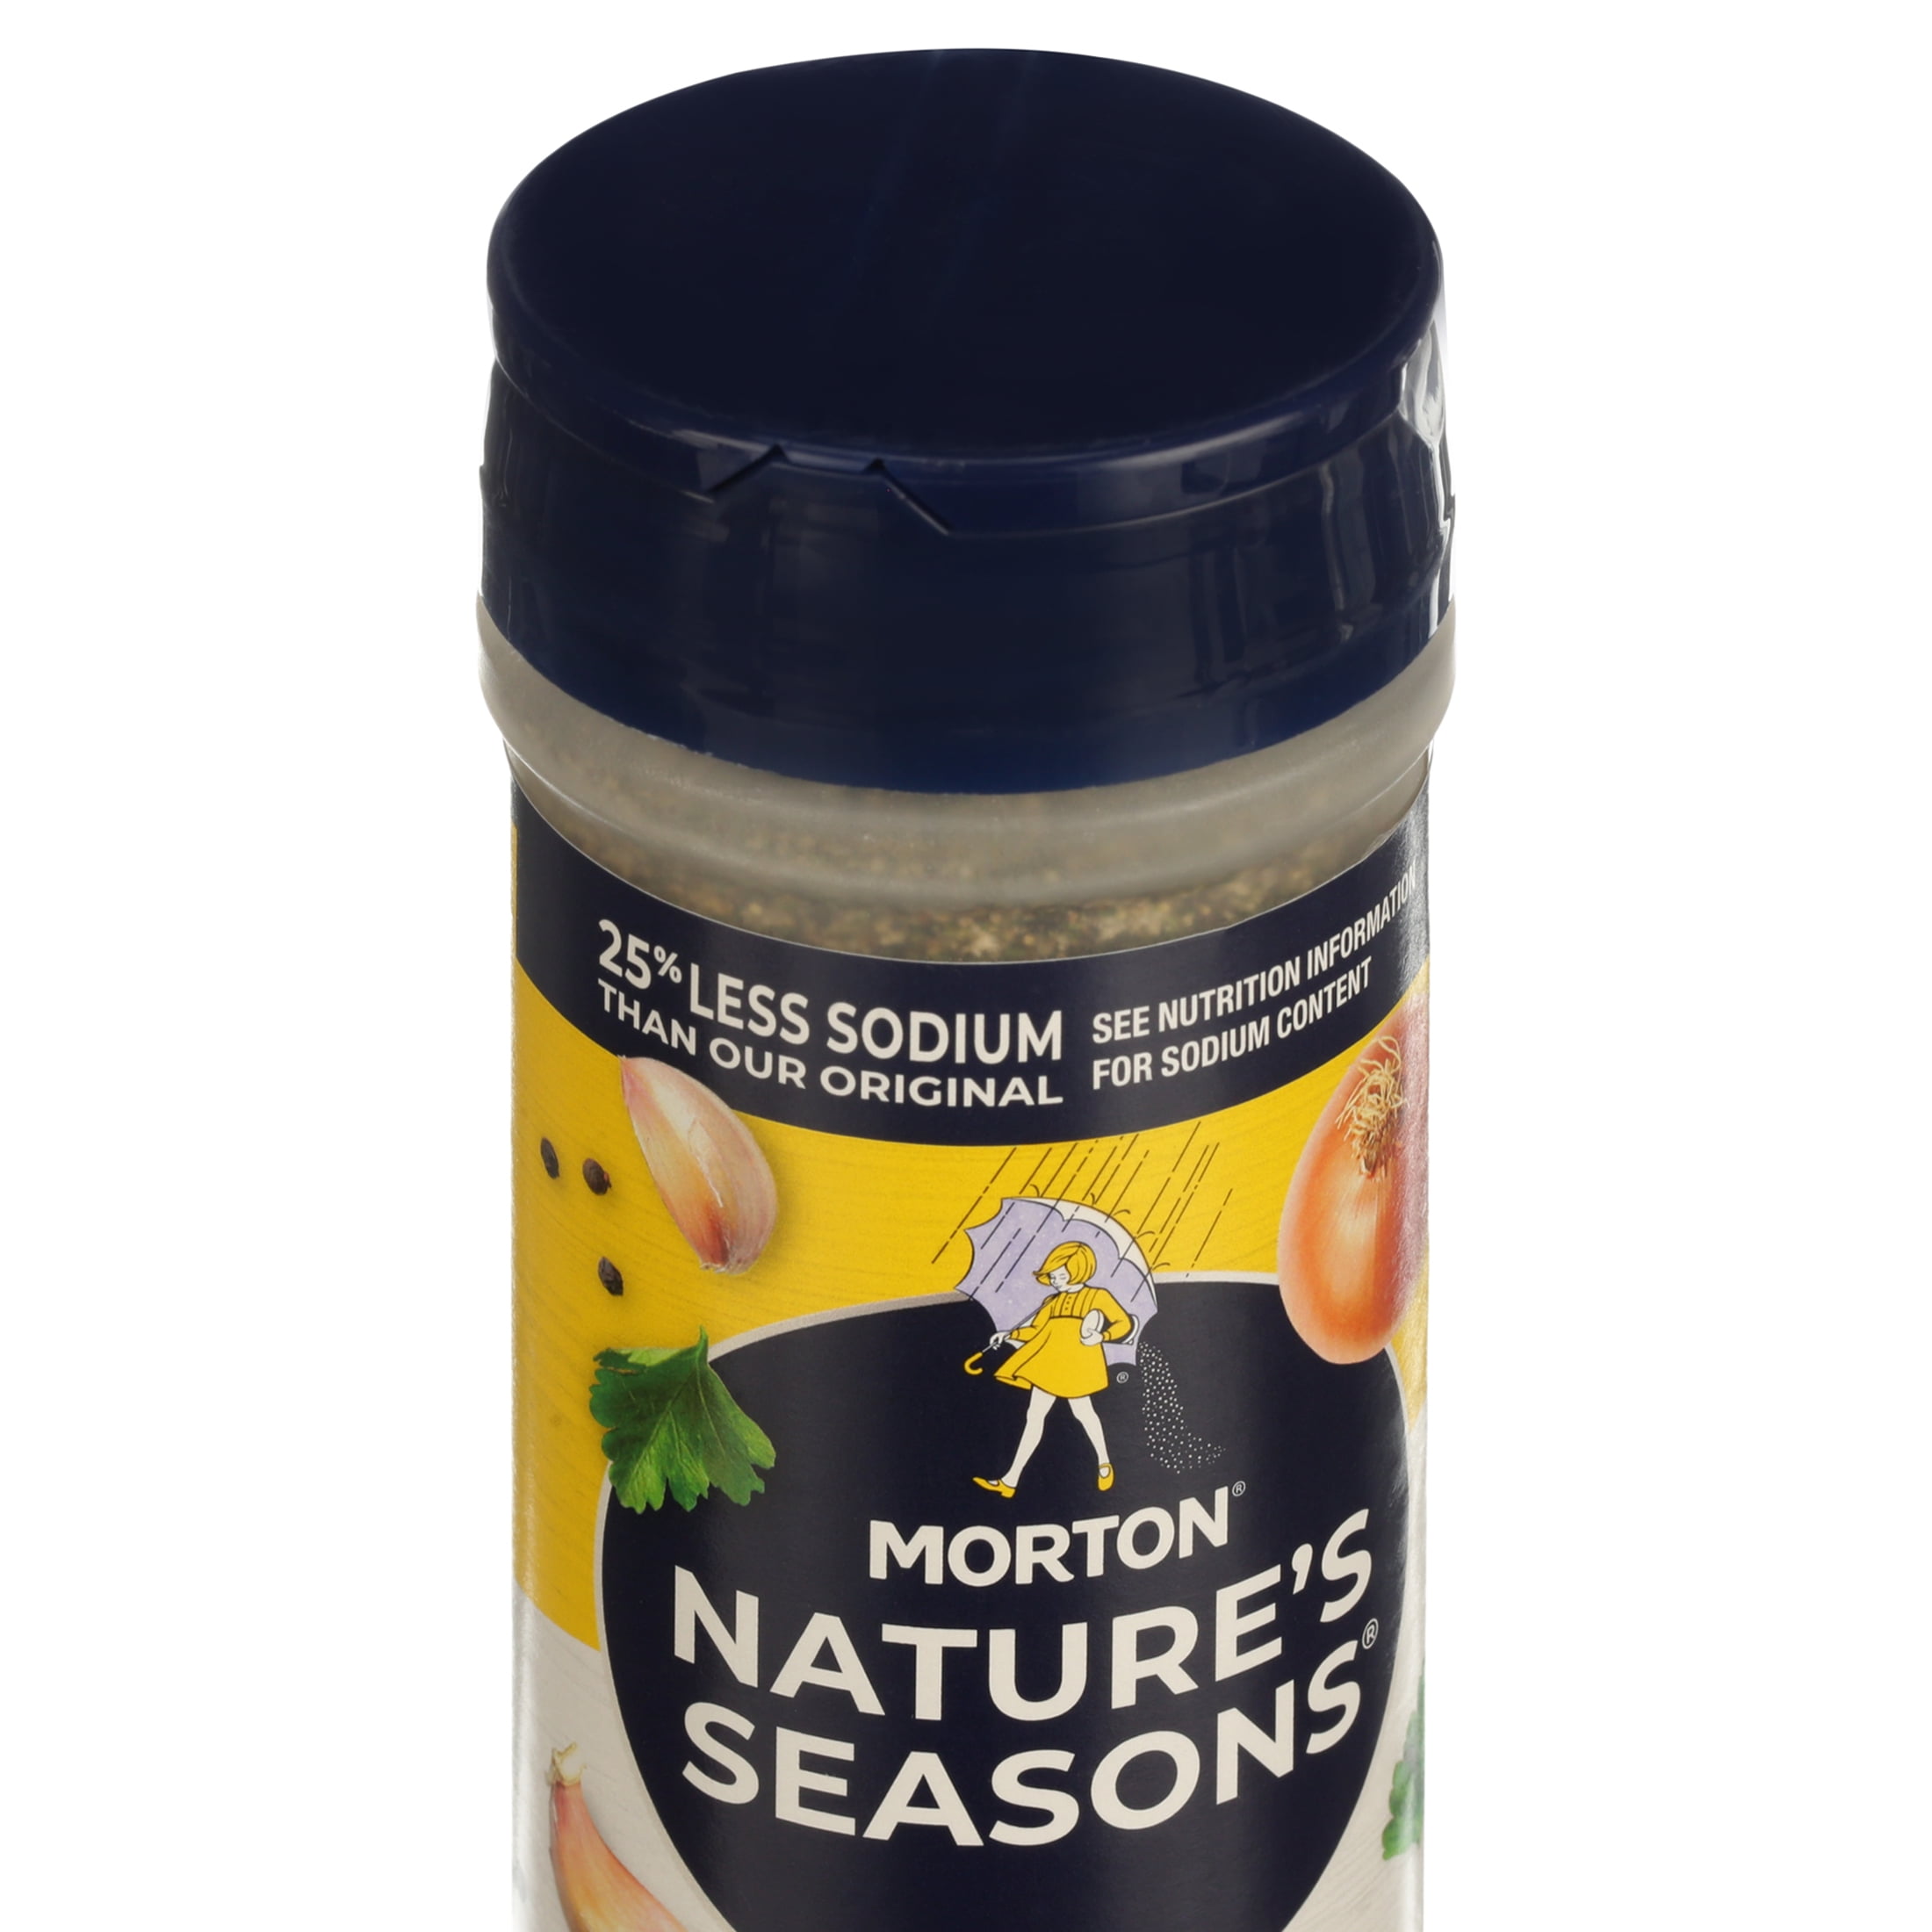 MORTON® NATURE'S SEASONS® SEASONING BLEND - Morton Salt